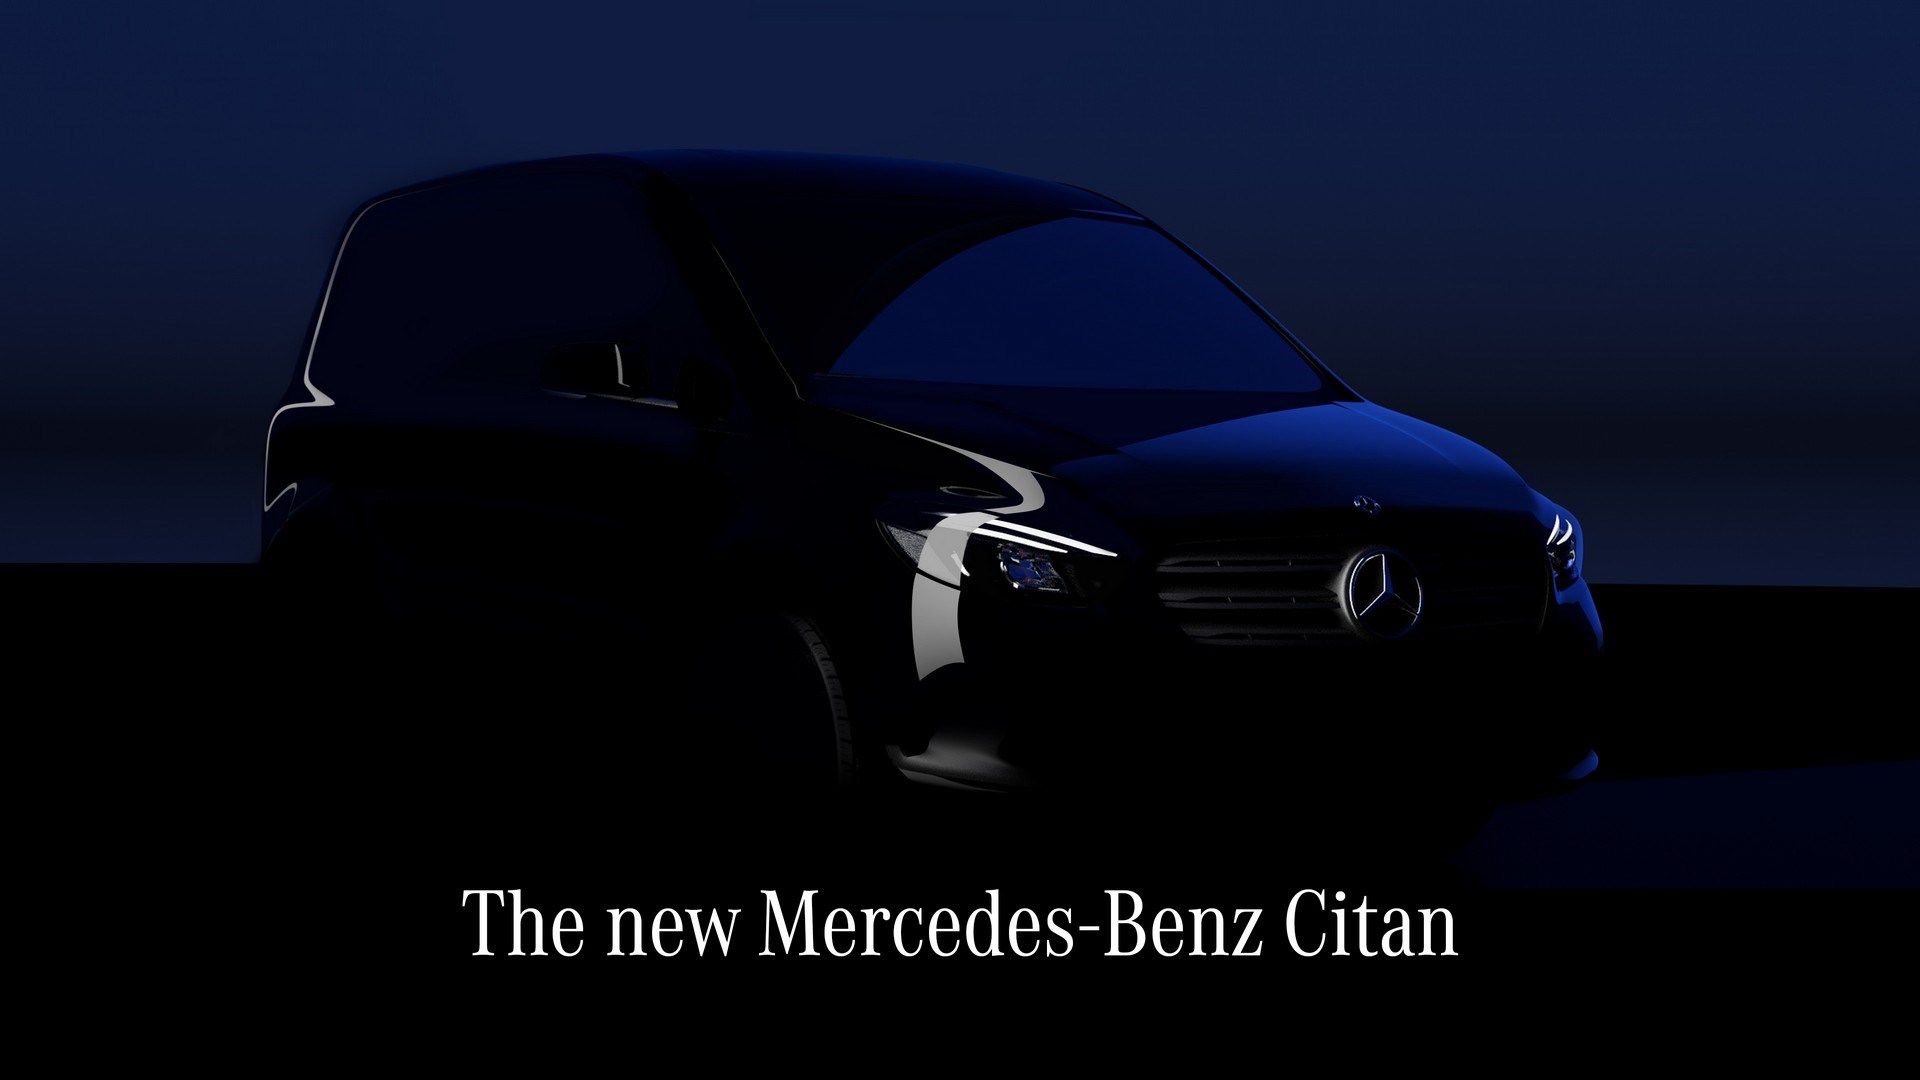 2021 Mercedes Citan ne zaman tanıtılacak? Nasıl görünecek?